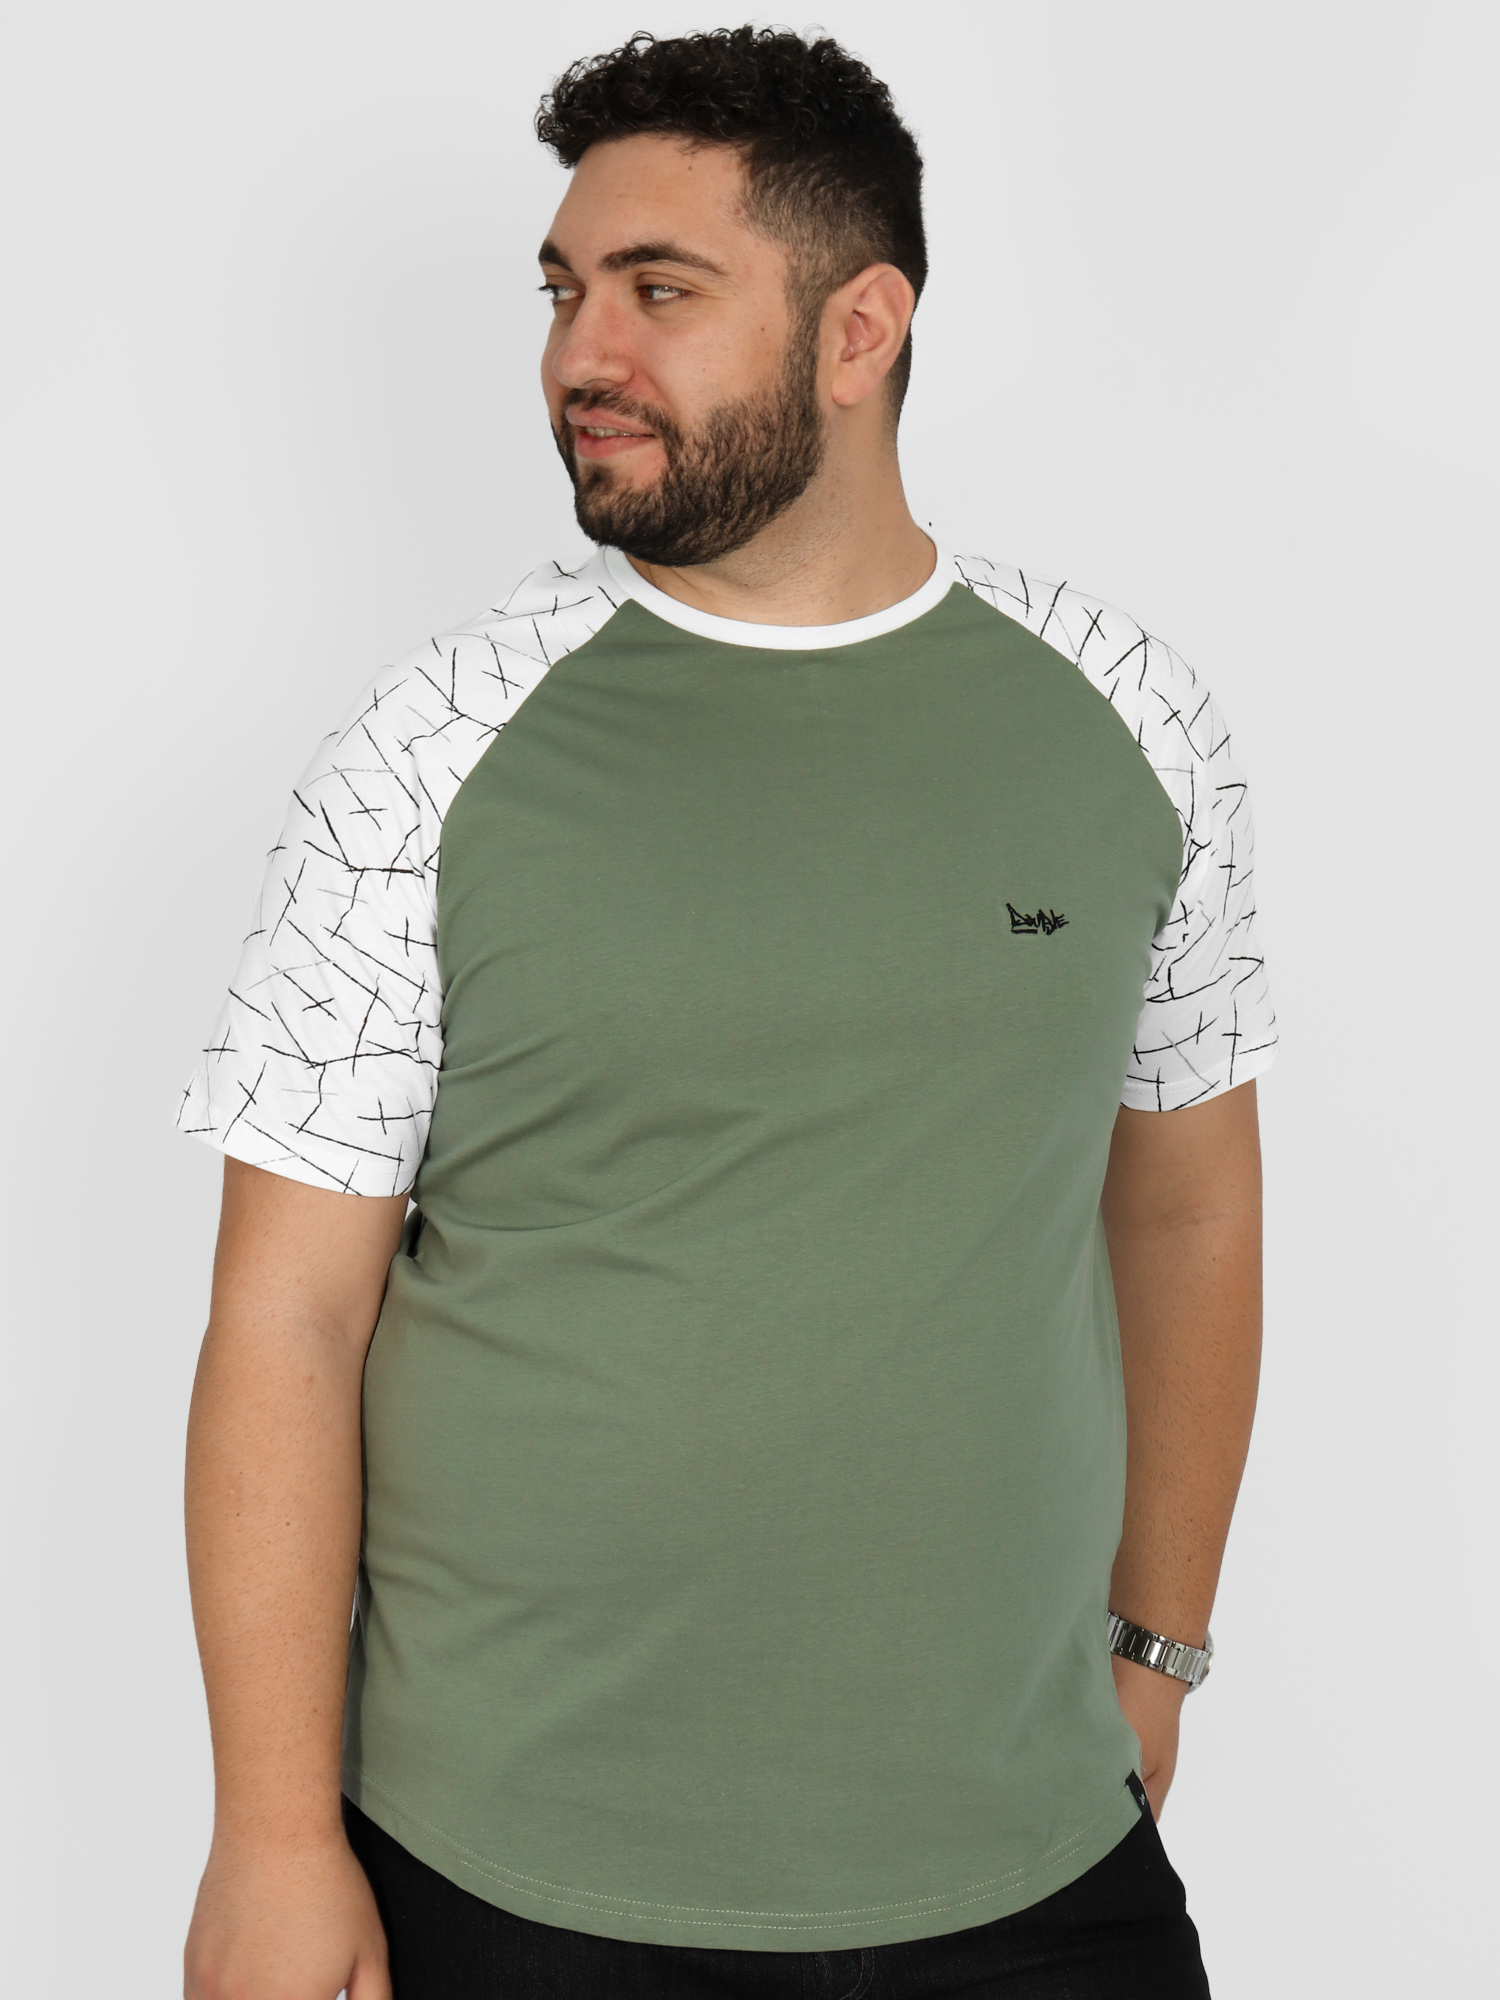 Ανδρική Μπλούζα Τ-shirt Δίχρωμη - Μαύρο